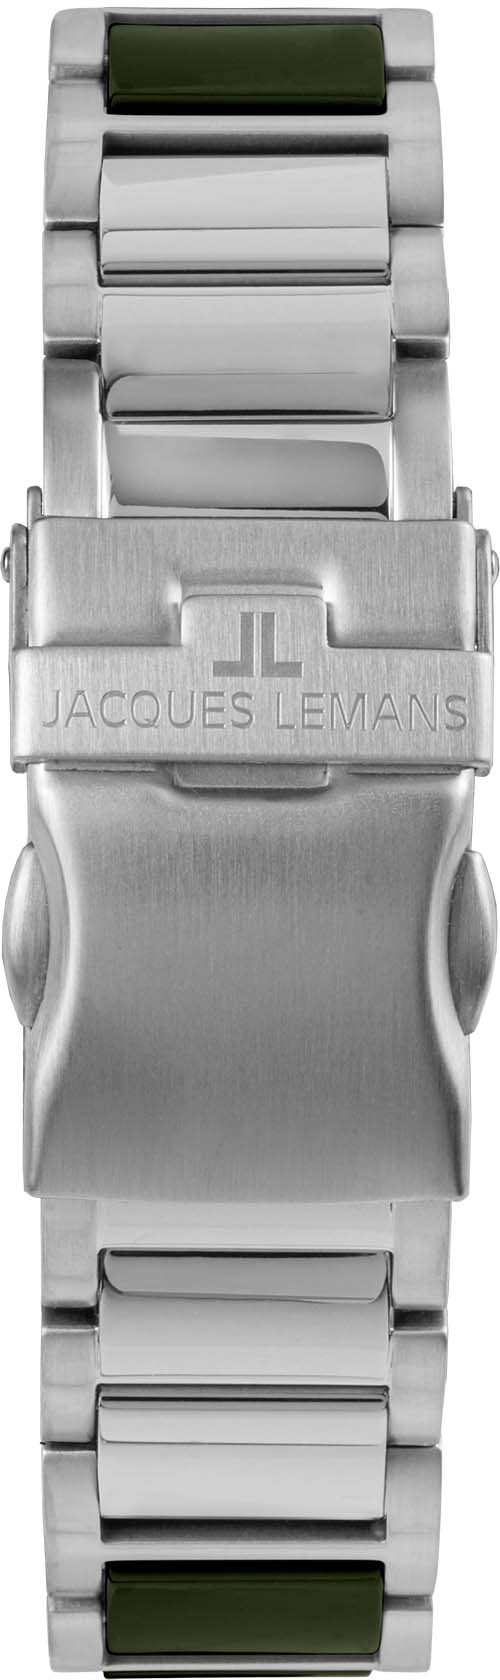 Jacques Lemans Keramikuhr »Liverpool, 42-10C«